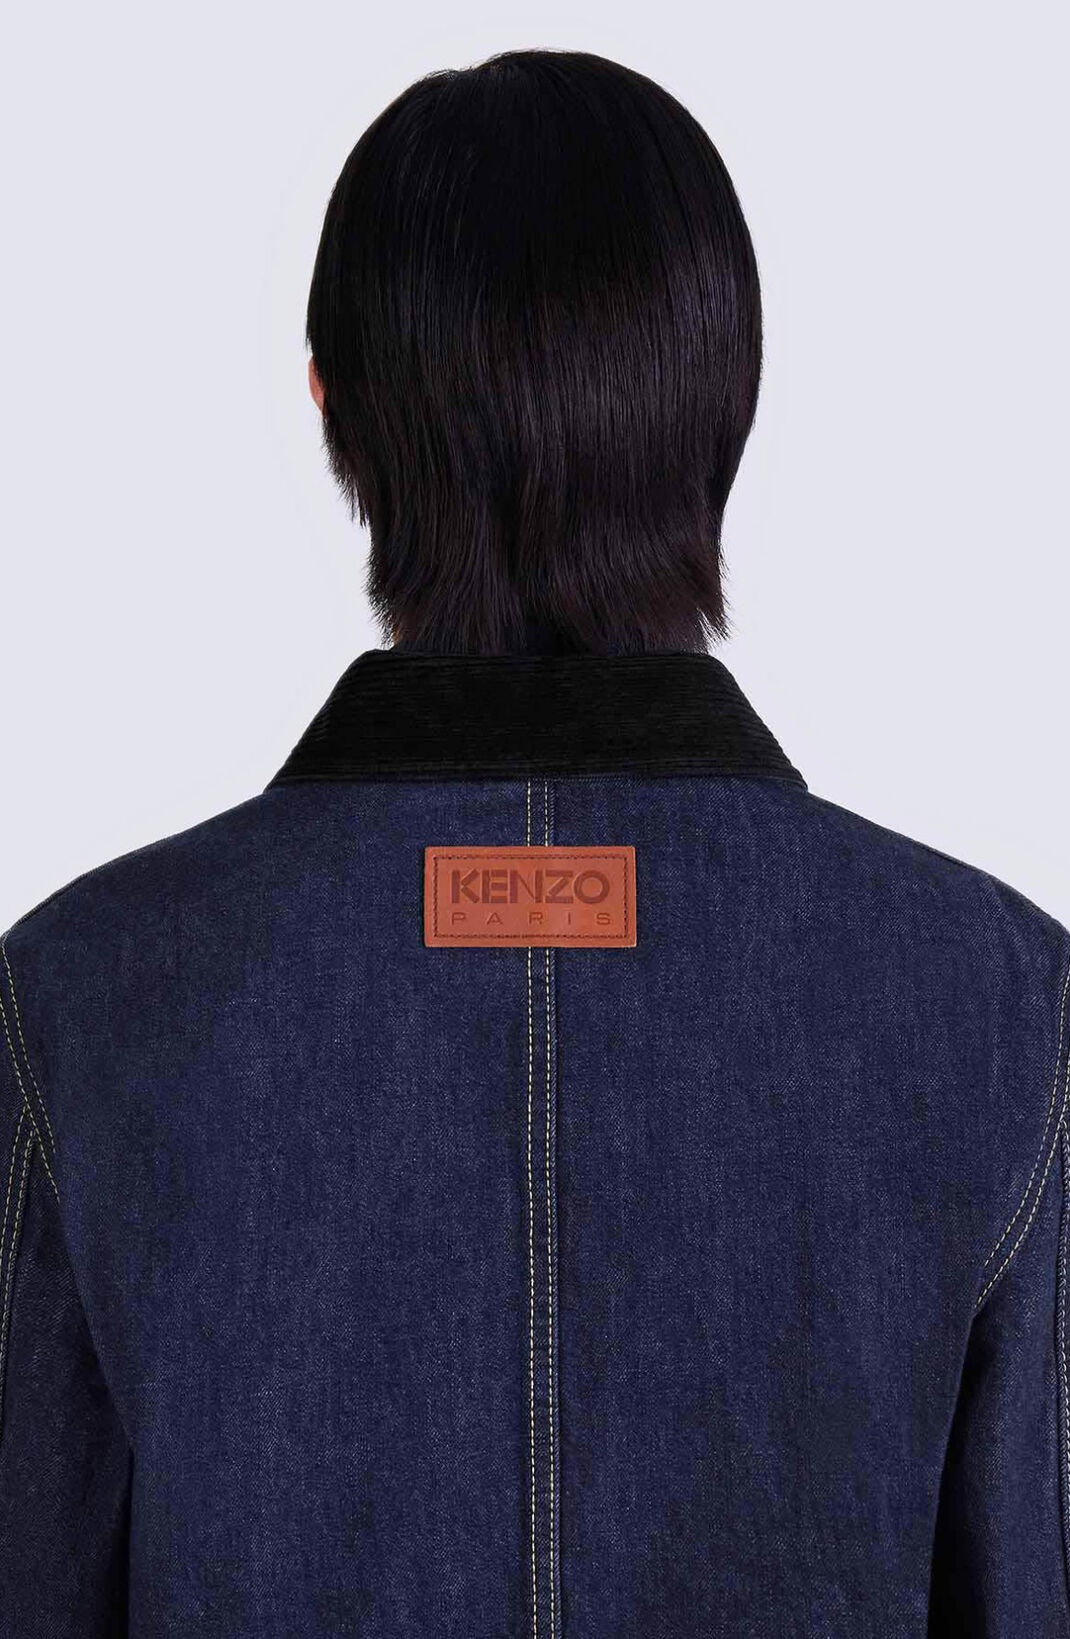 'KENZO Poppy' workwear denim jacket - 8